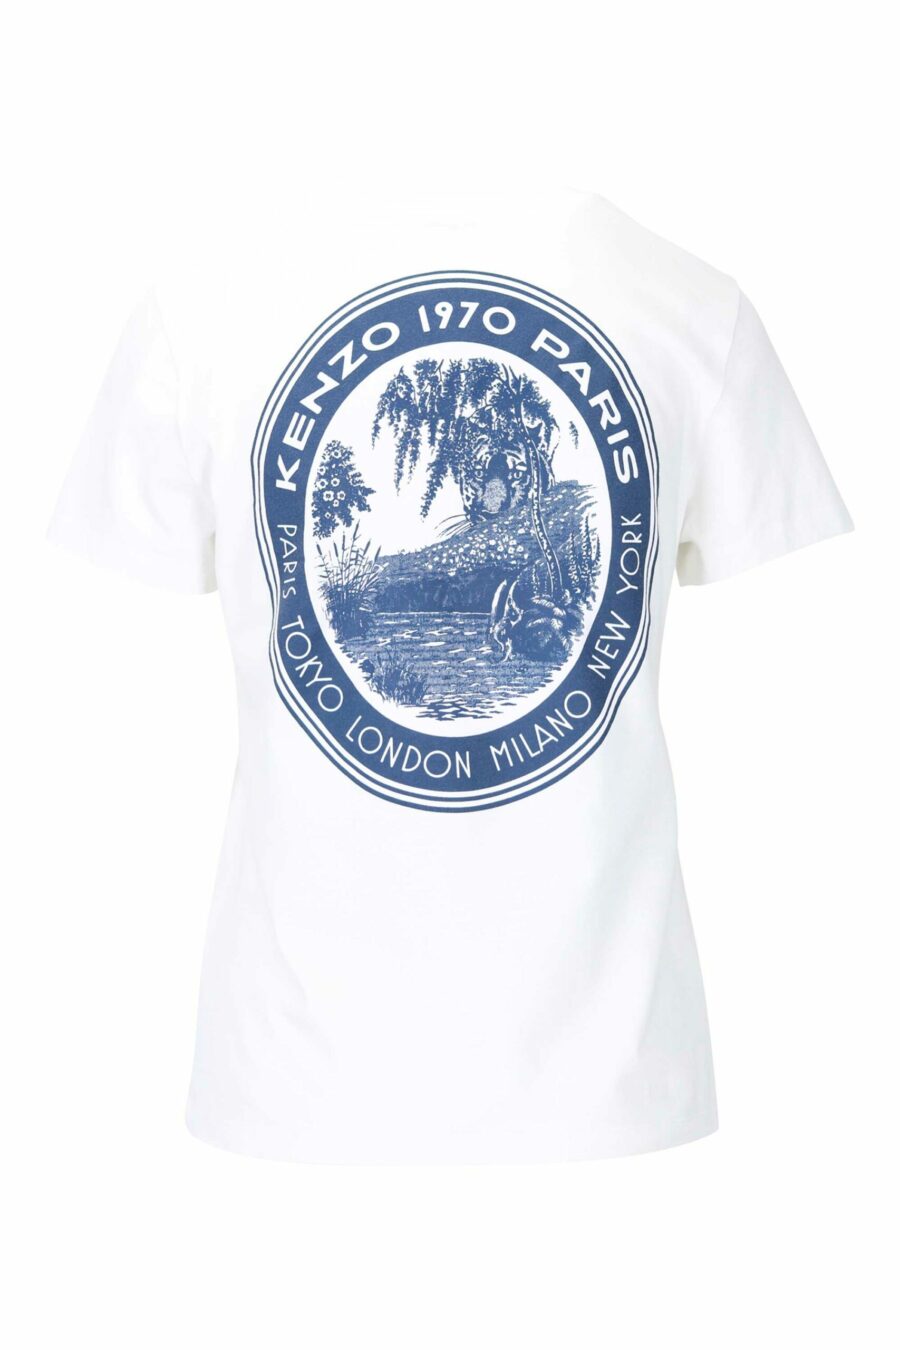 Weißes T-Shirt mit rundem Mini-Logo und Grafik auf dem Rücken - 3612230517936 1 skaliert